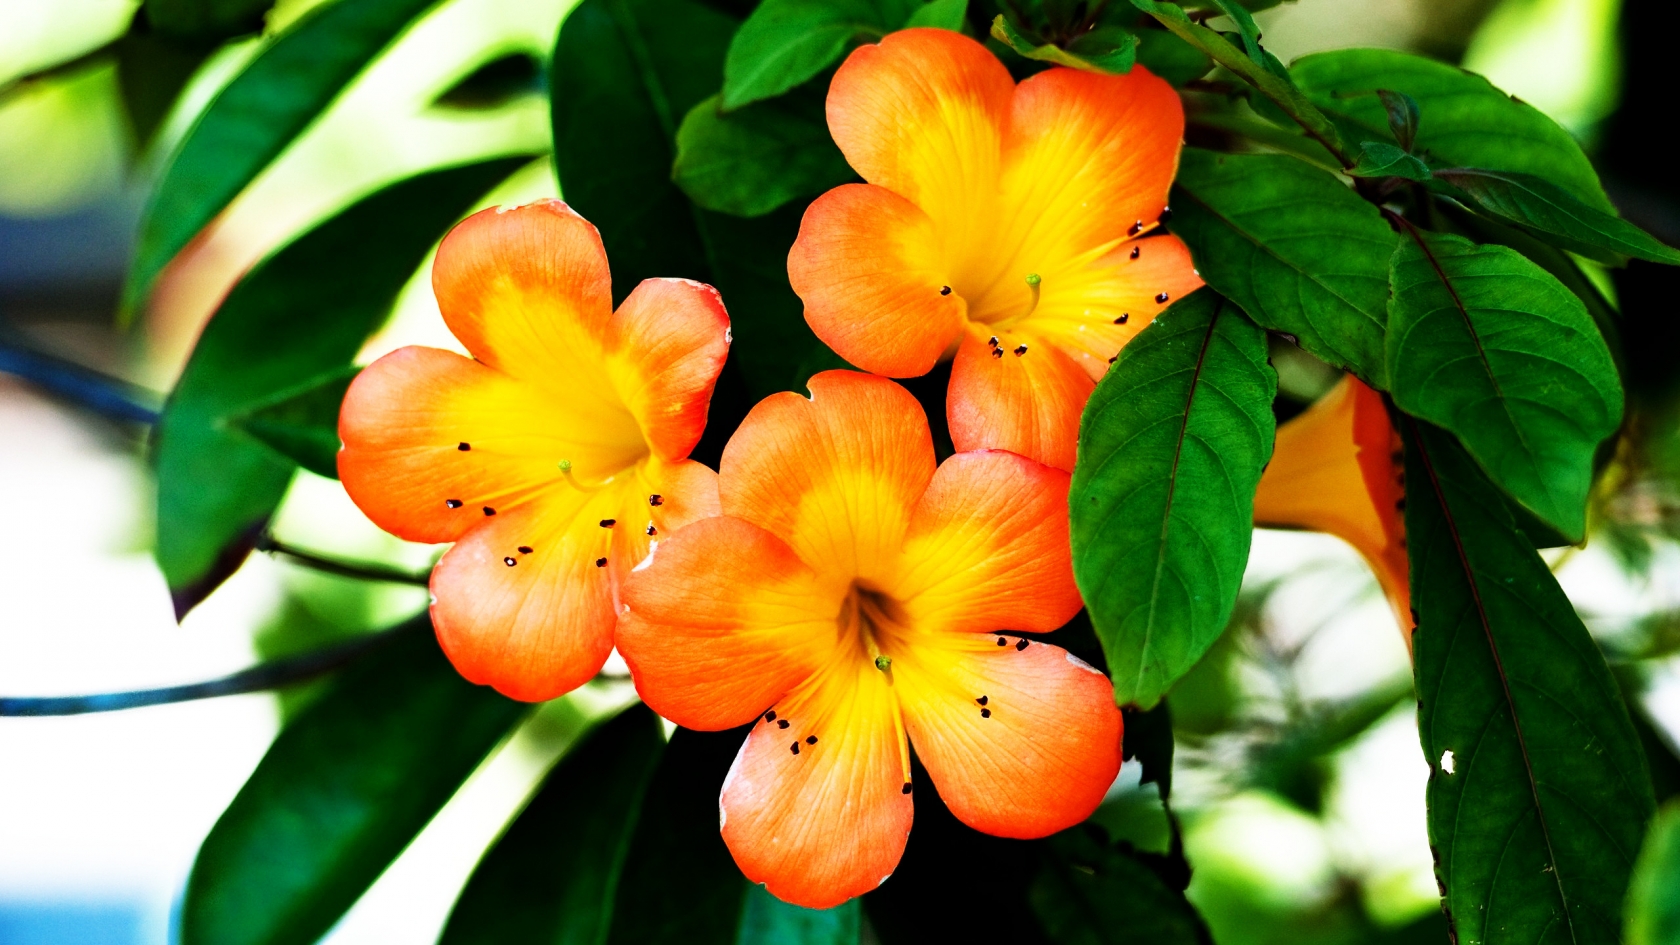 Spring Orange Flower for 1680 x 945 HDTV resolution